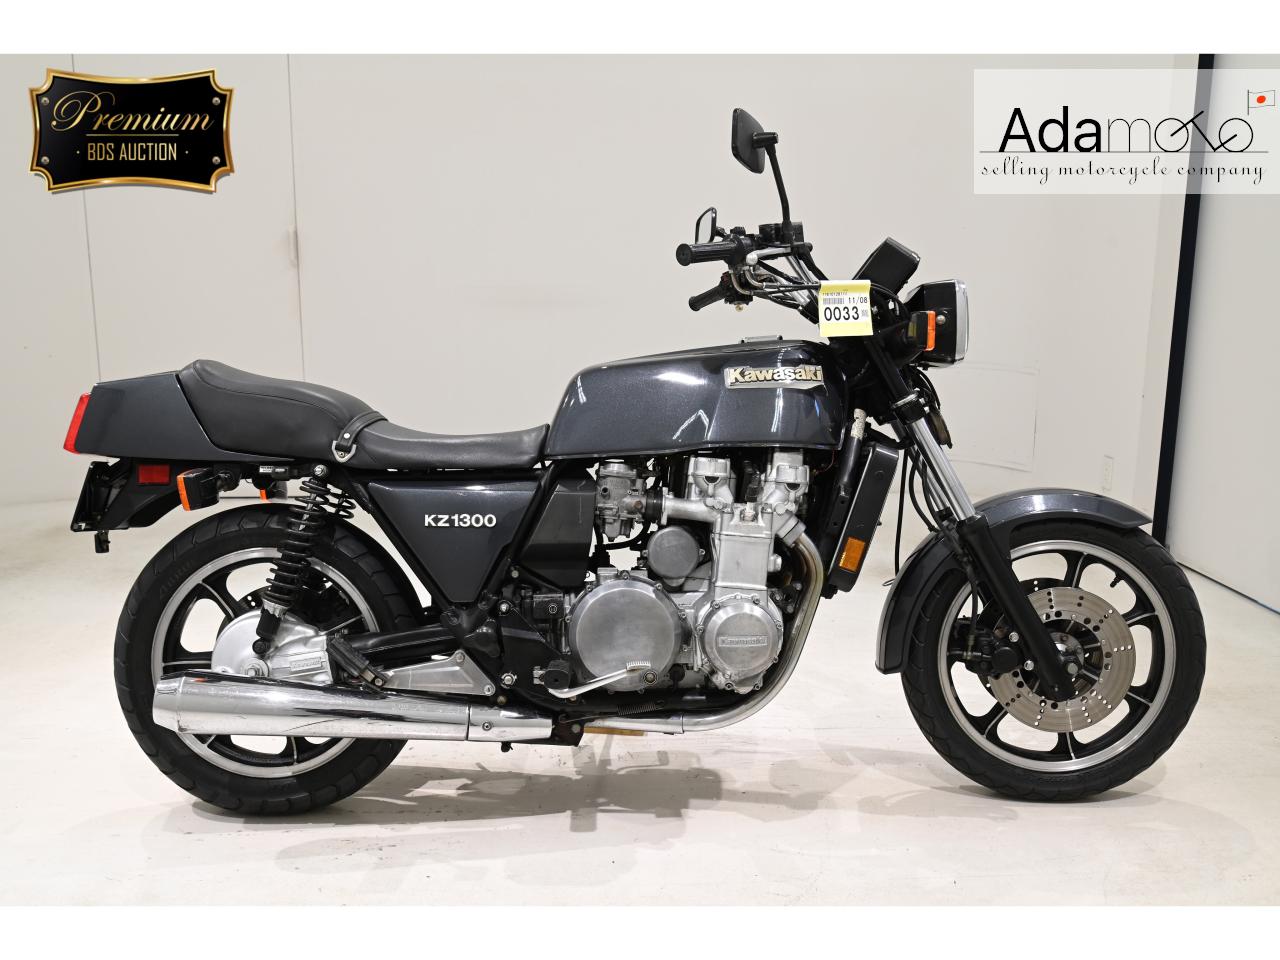 Kawasaki Z1300 - Adamoto - Motorcycles from Japan